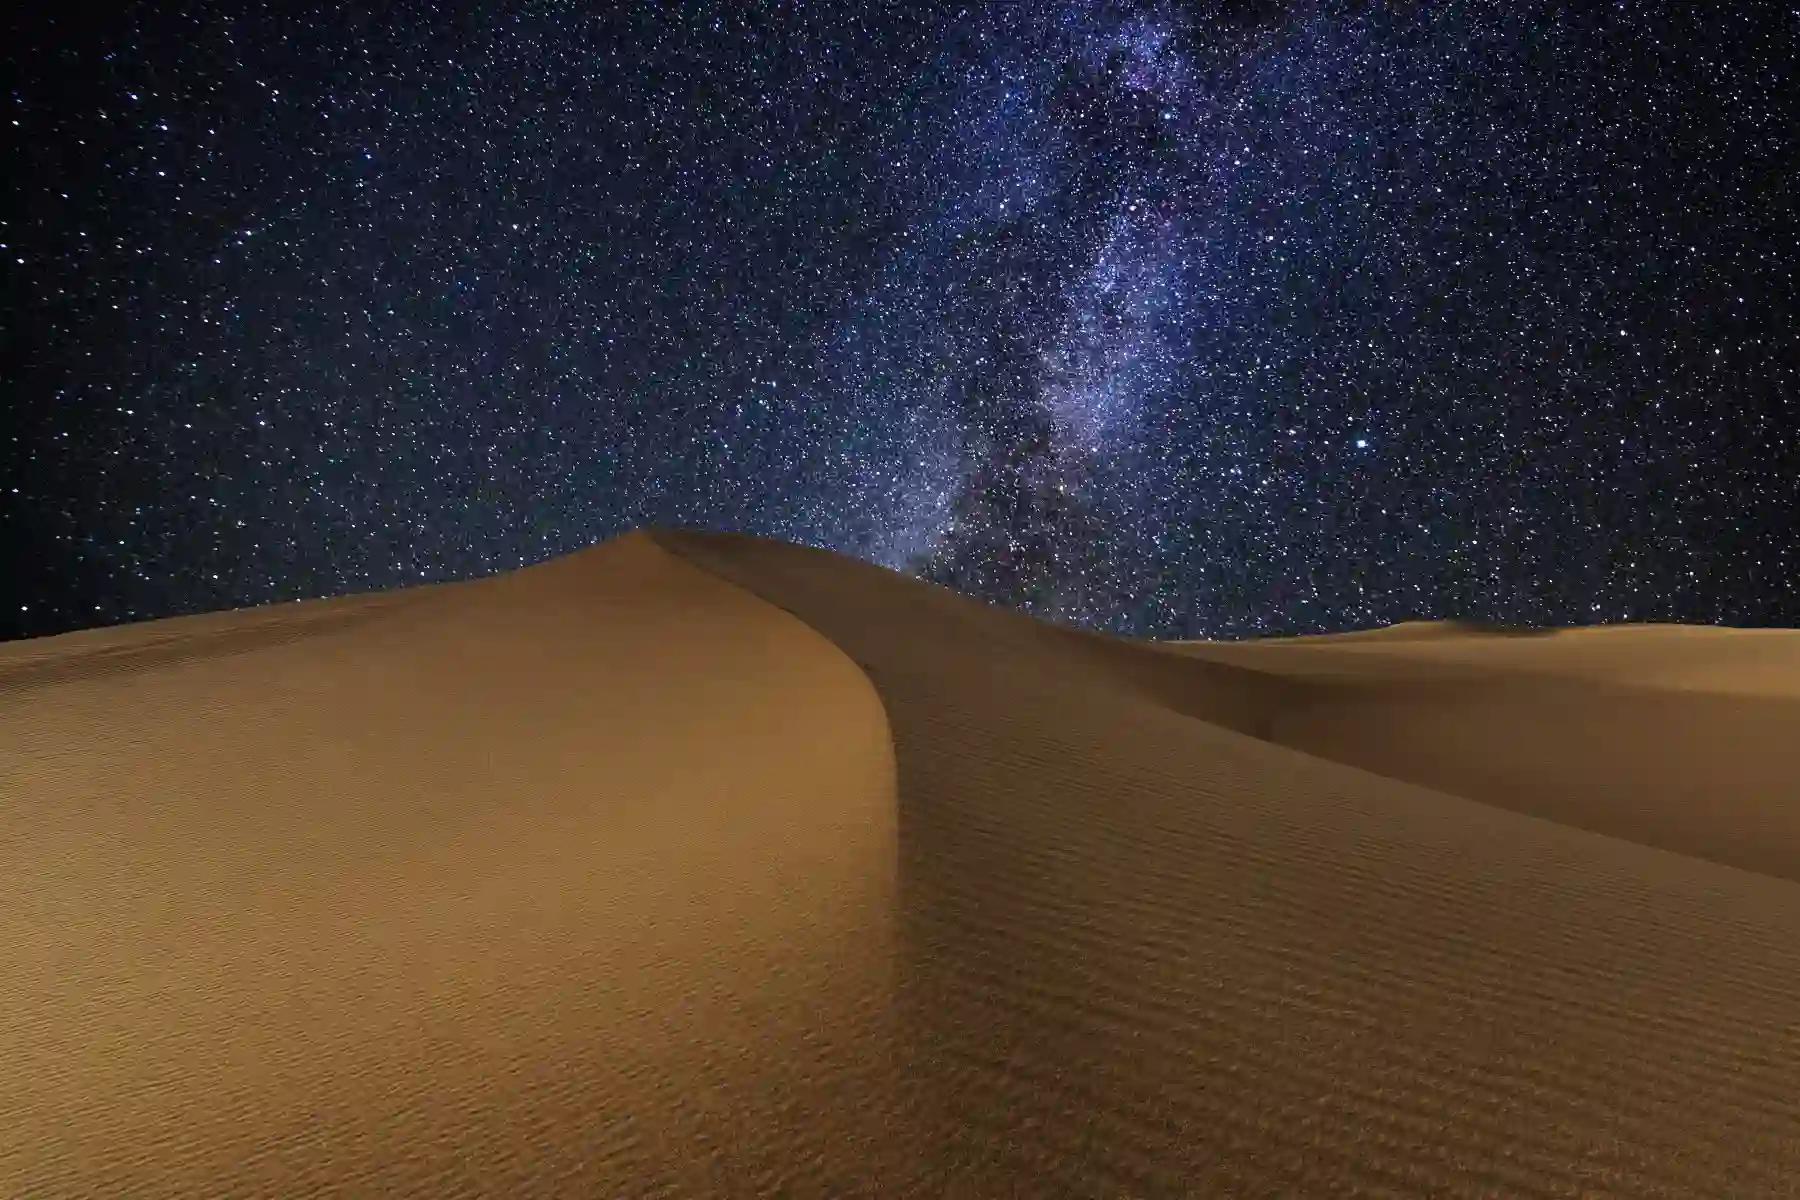 Stargazing in the desert